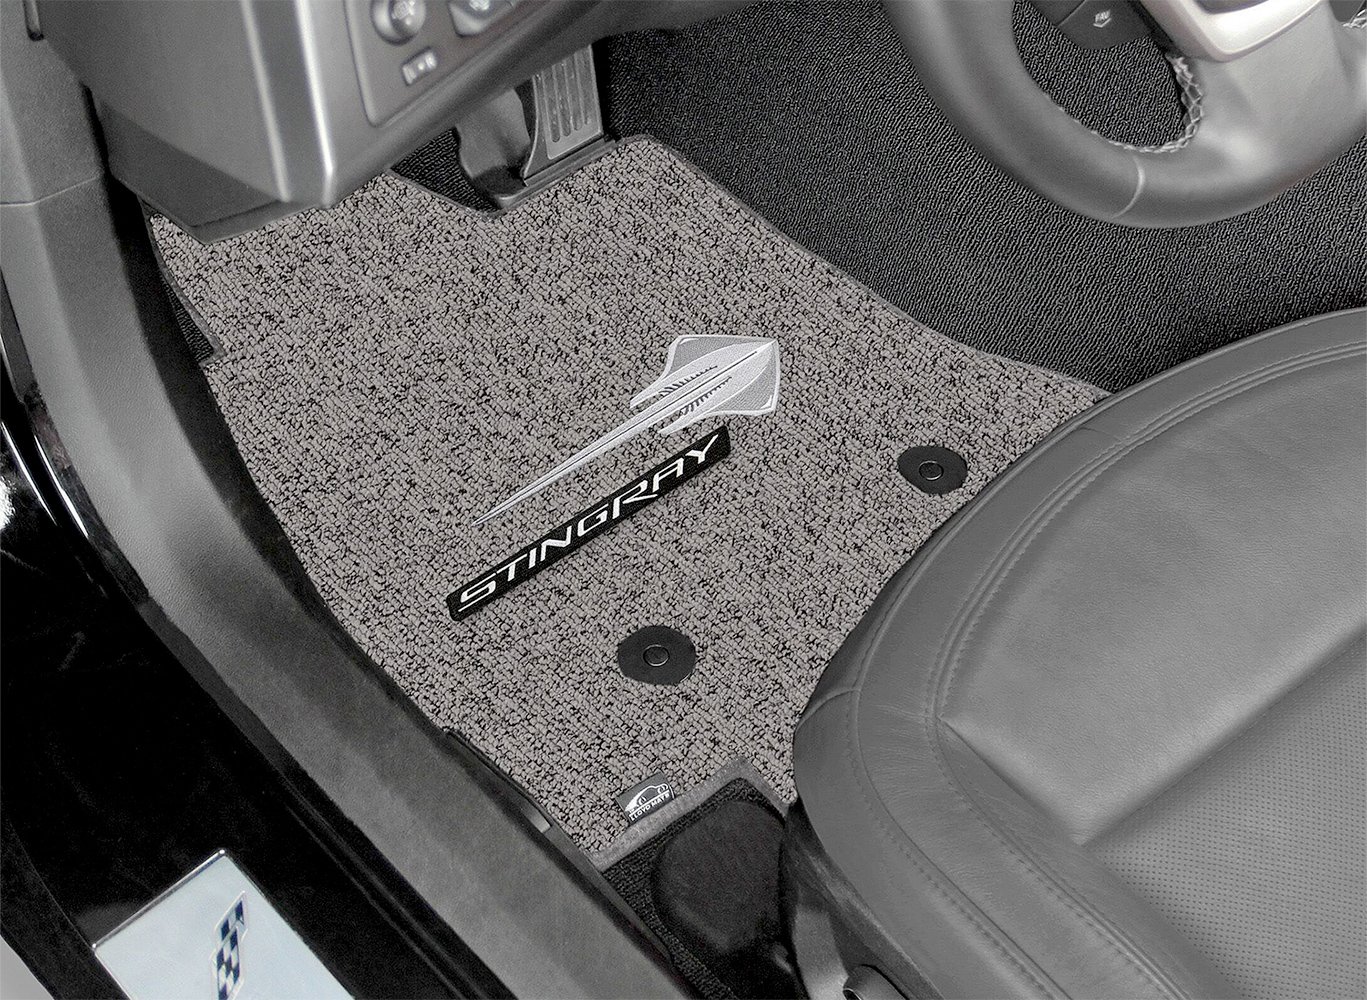 DashMat Original Dashboard Cover Buick Centurion LeSabre (Premium Carpet, Black) - 1